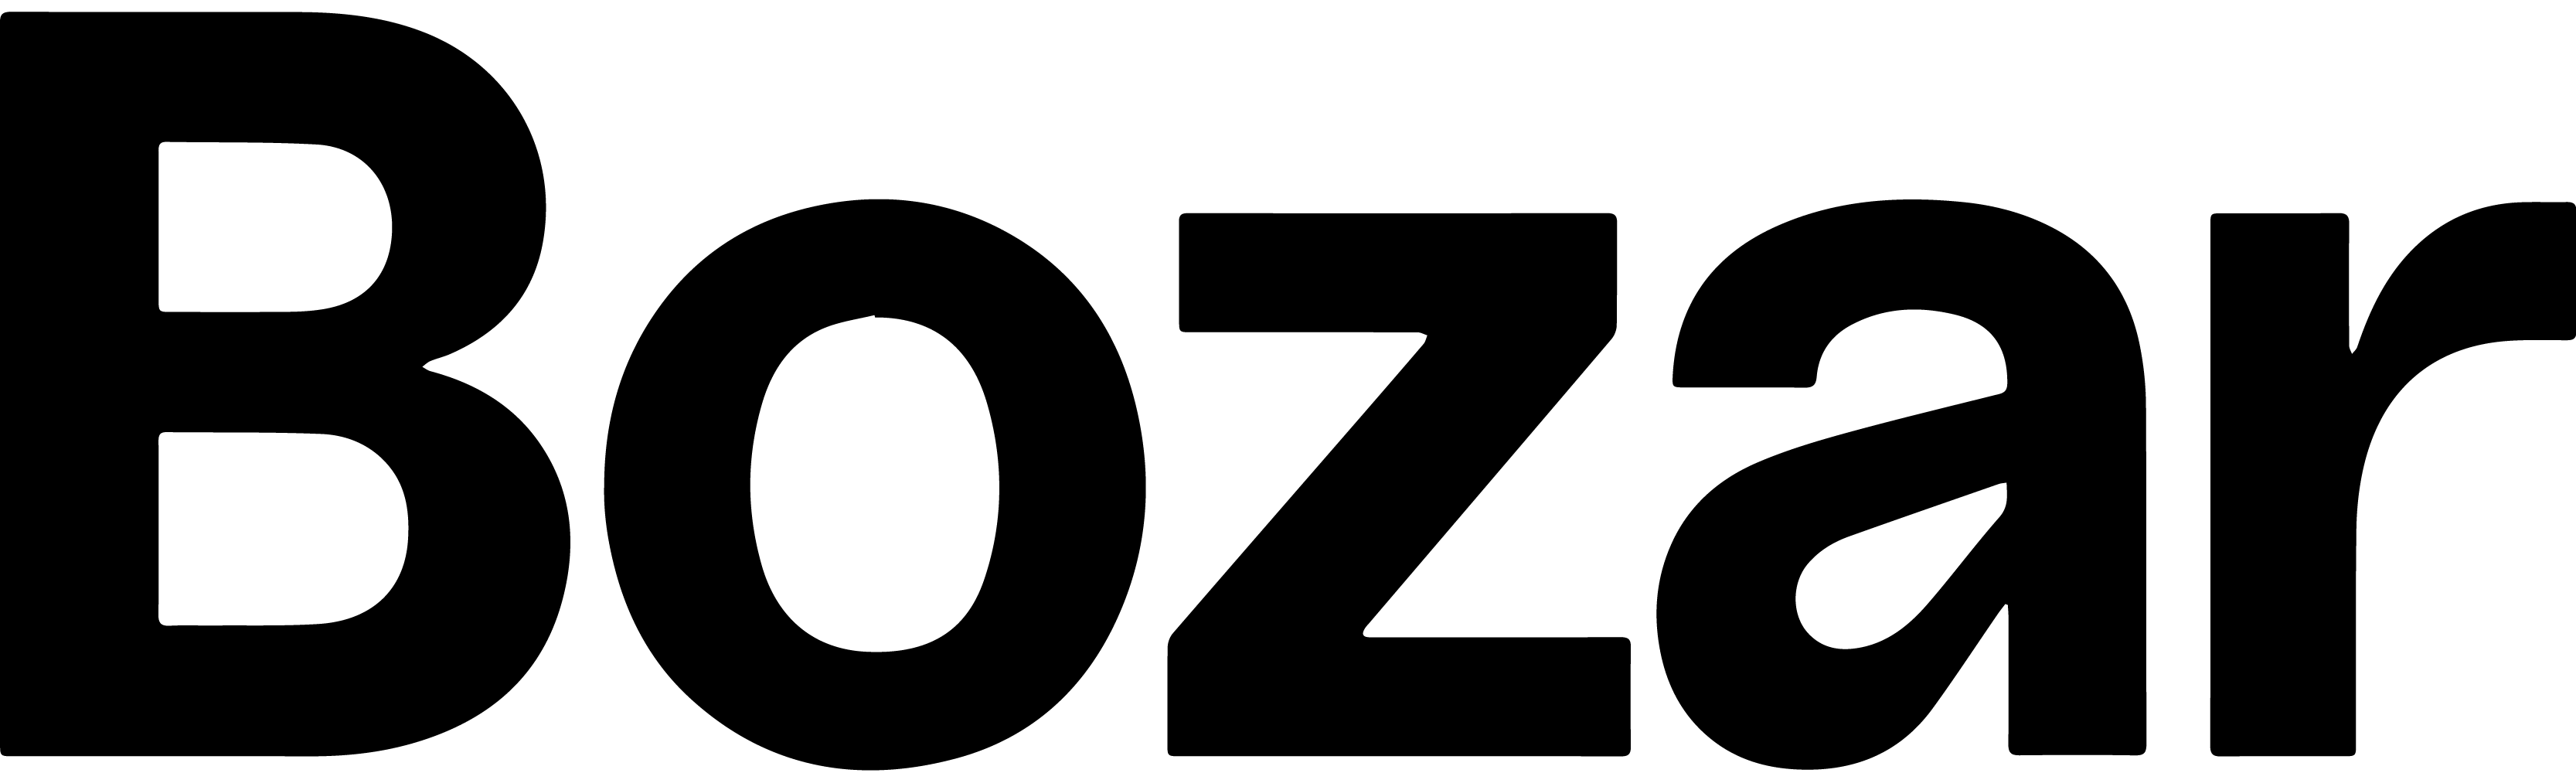 Logo Bozar